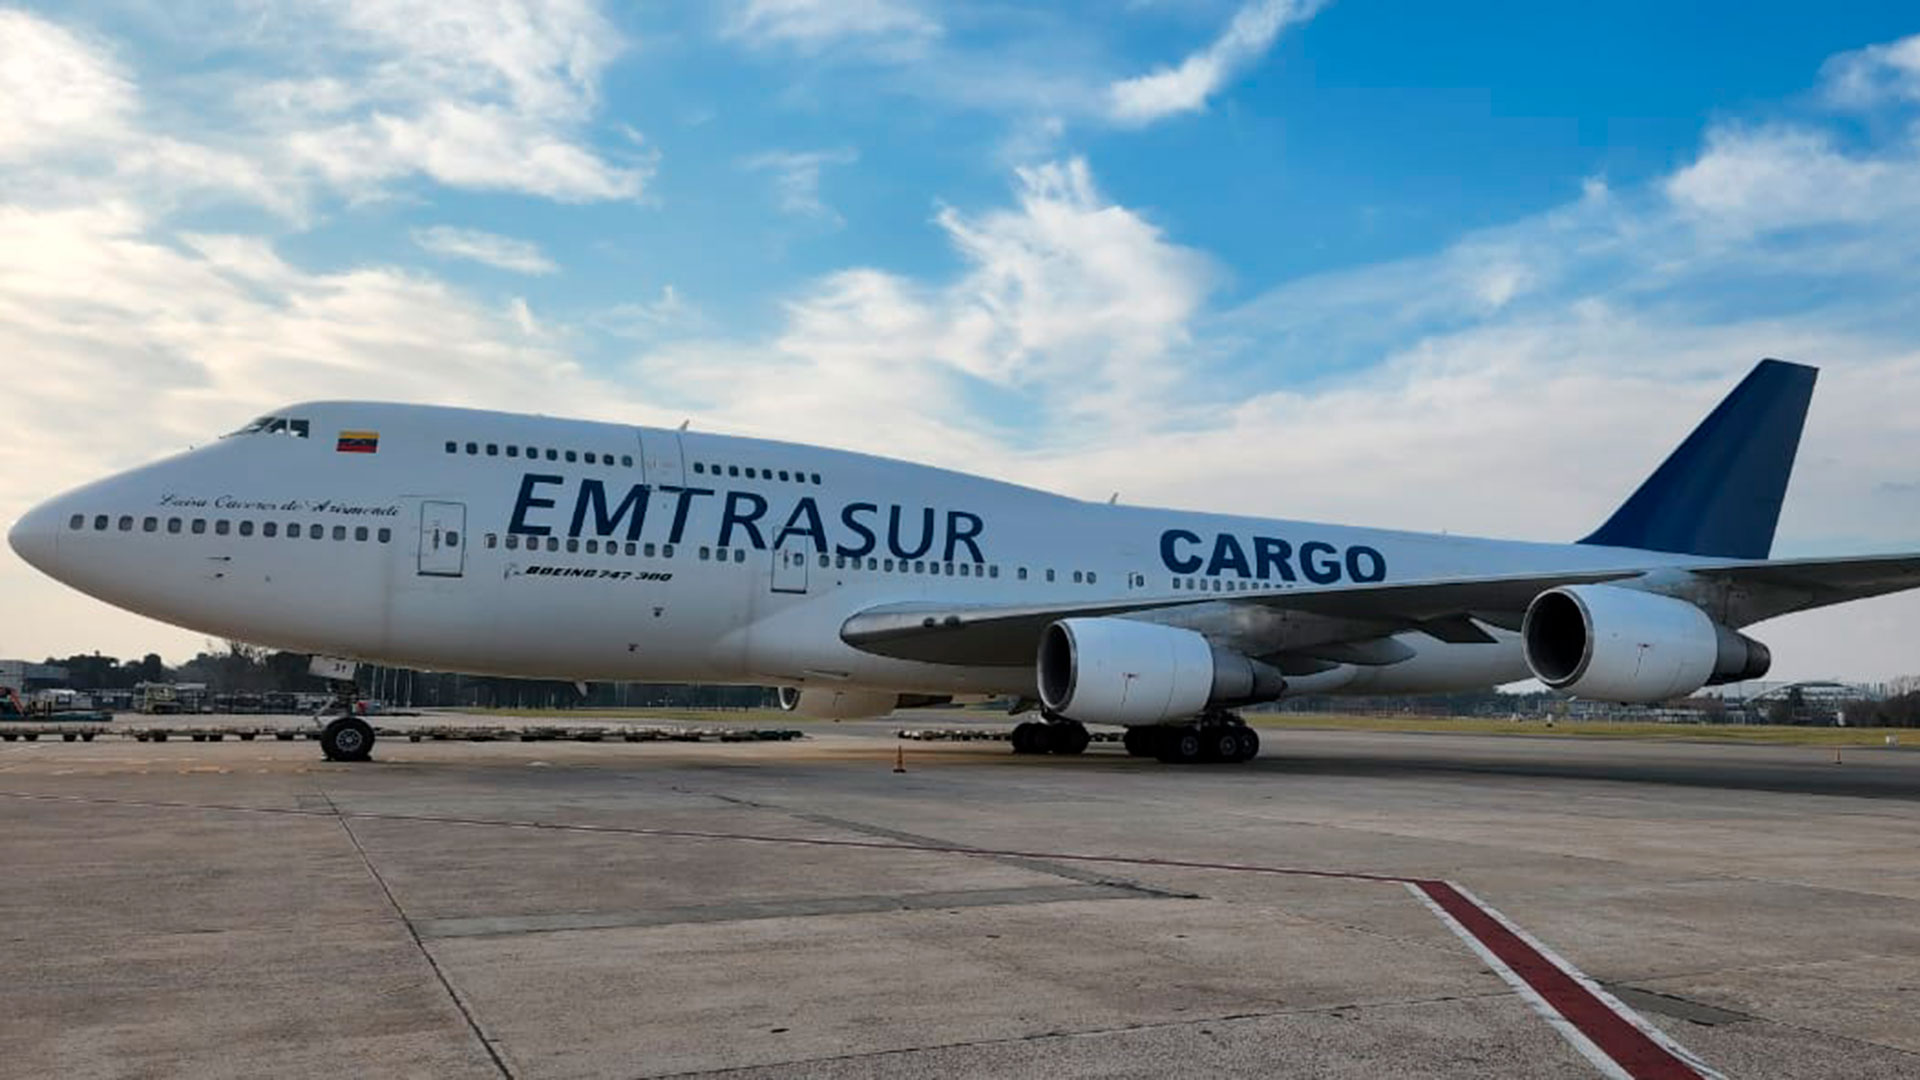 El Boeing 747 de Emtrasur se encuentra varado junto a su tripulación en el Aeropuerto de Ezeiza (Argentina) desde comienzos de junio